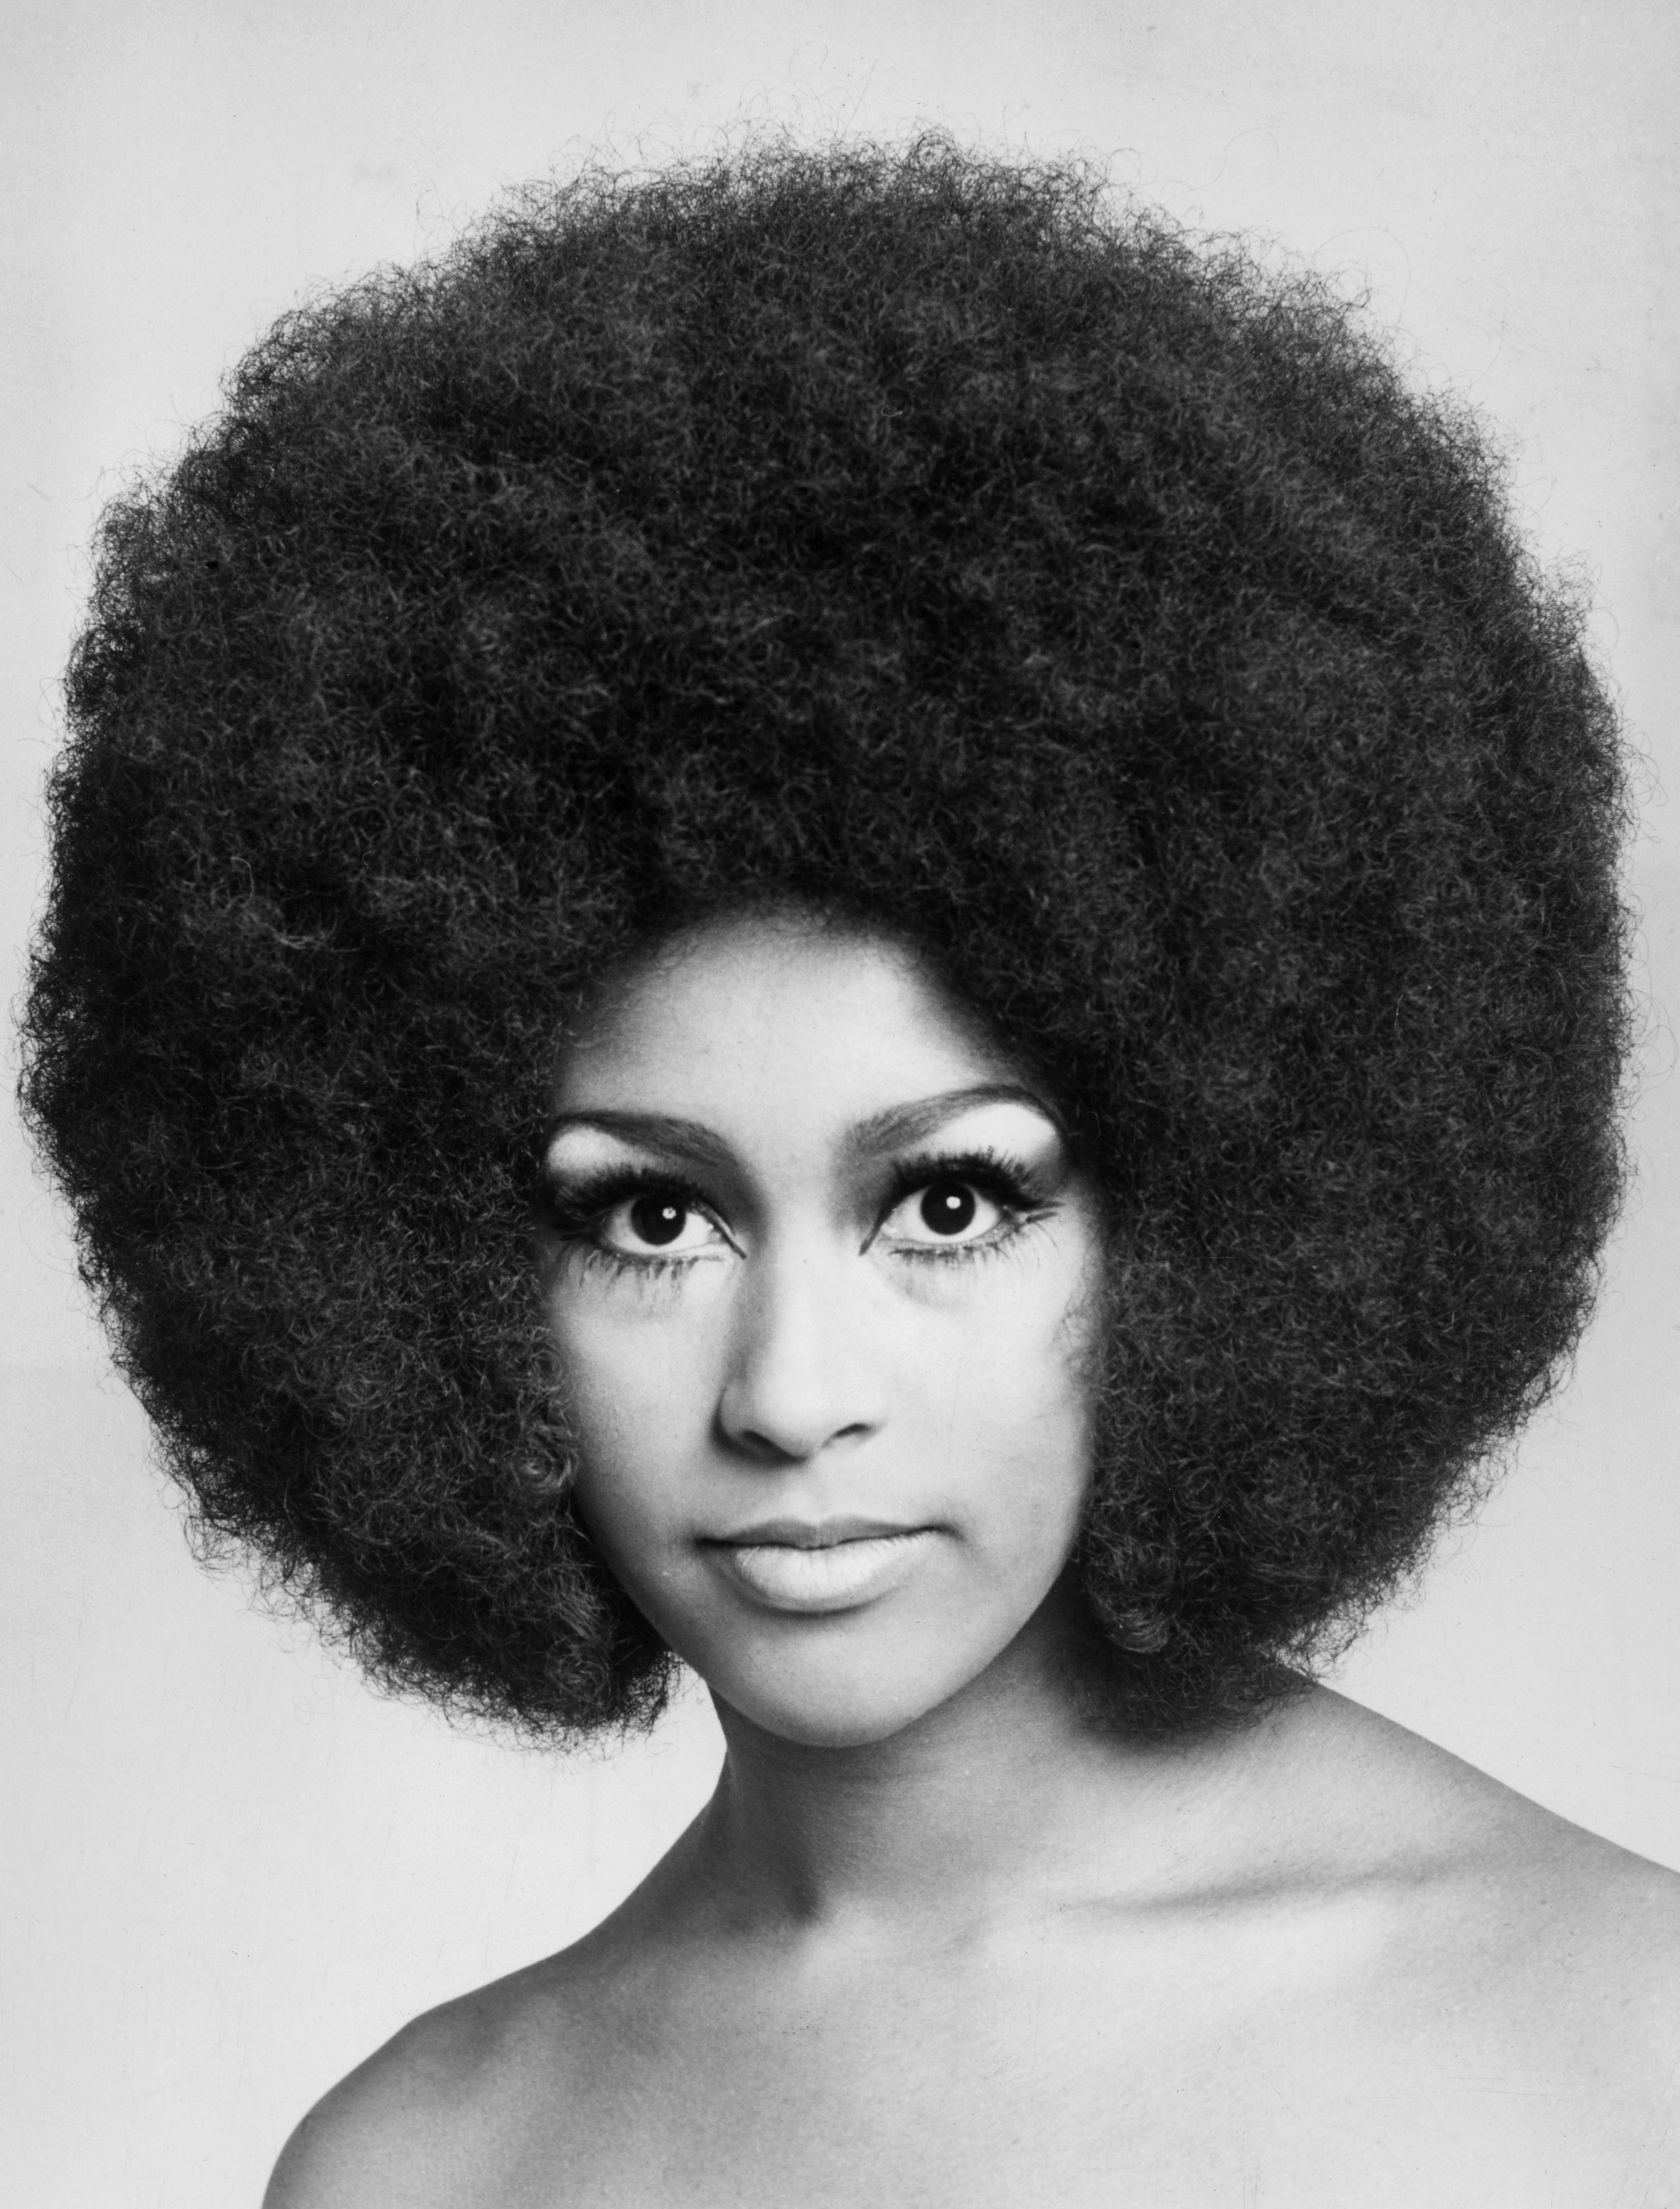 Black Beauty History: Marsha Hunt, Renaissance Woman Of The '60s
